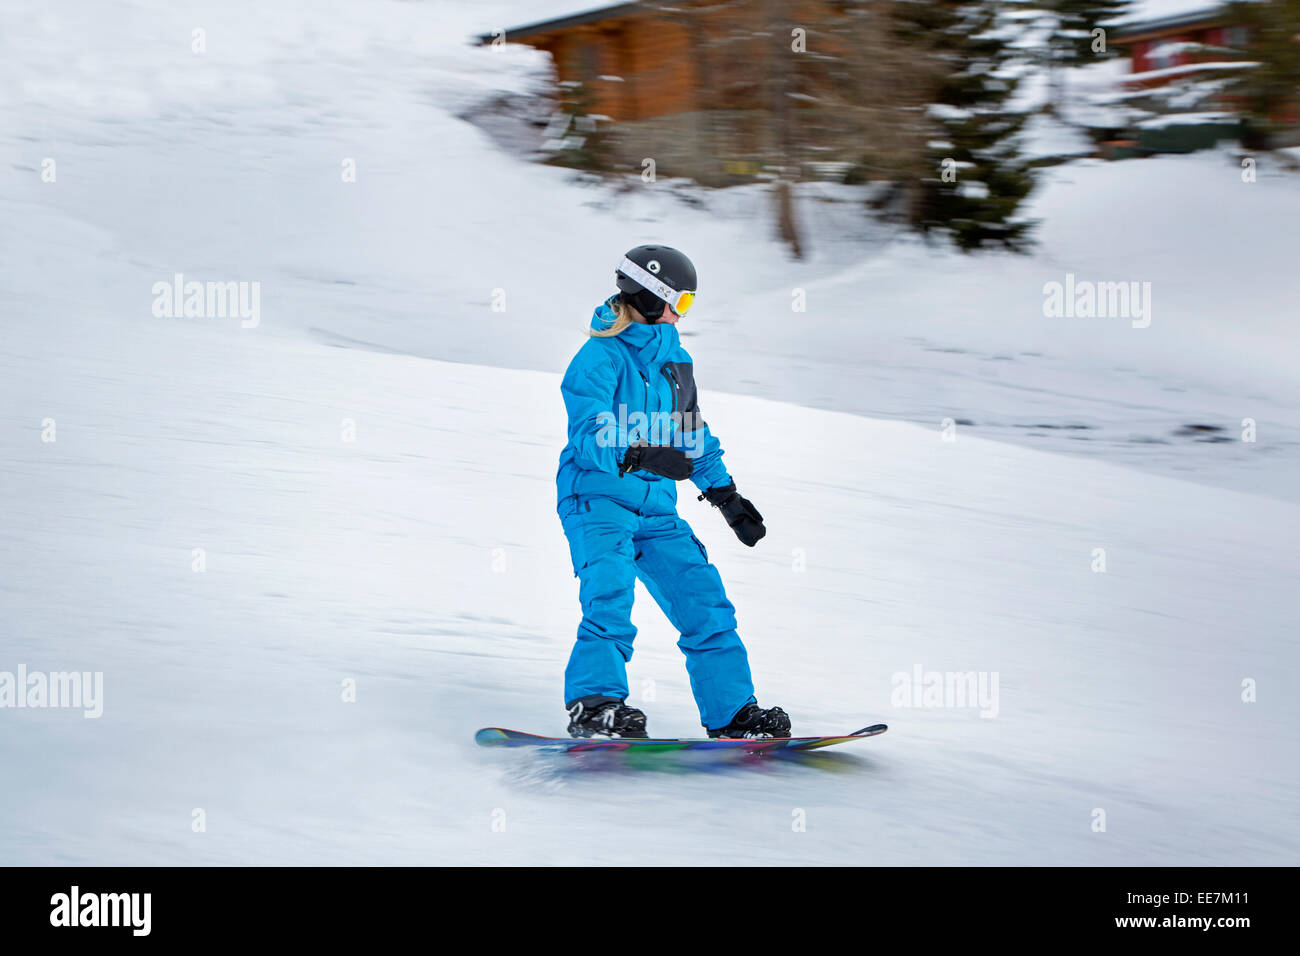 Joven snowboarder vistiendo casco de esquí esquí descendente en deportes de invierno en los Alpes Foto de stock